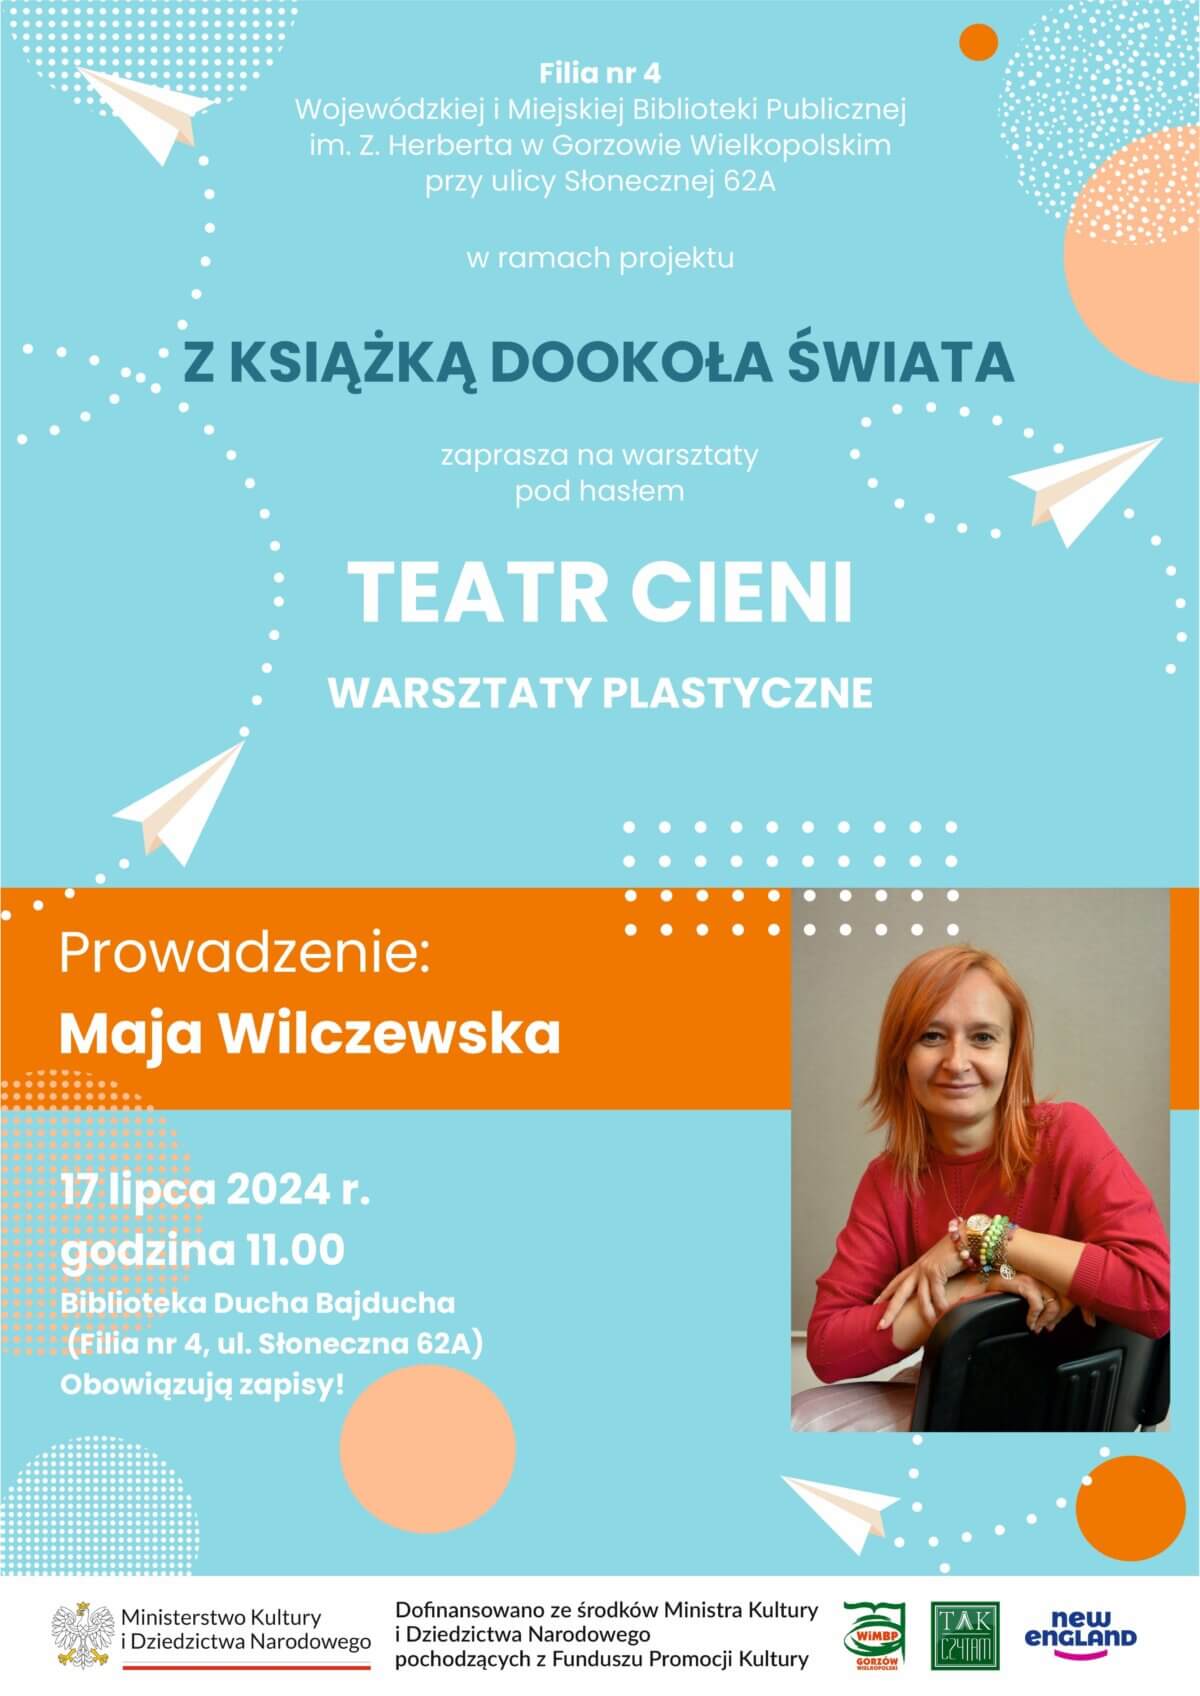 plakat promujący wydarzenie "Teatr cieni".